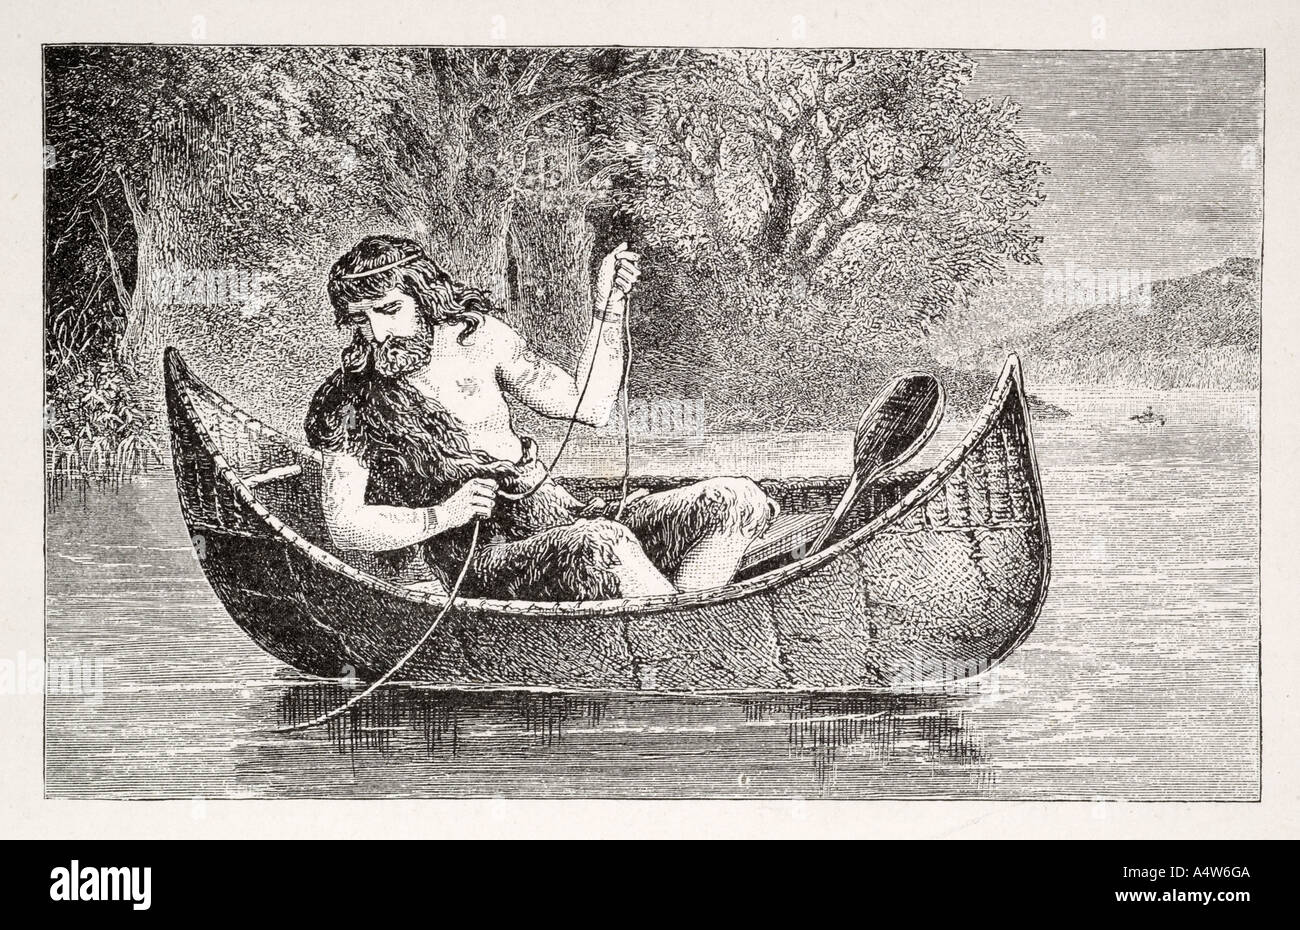 frühe Brite native Kanu Boot Paddel Ruder Fisch Haut verstecken Coracle Linie Schnur String Fluss Süßwasser Essen feed primitiven Fischen Stockfoto